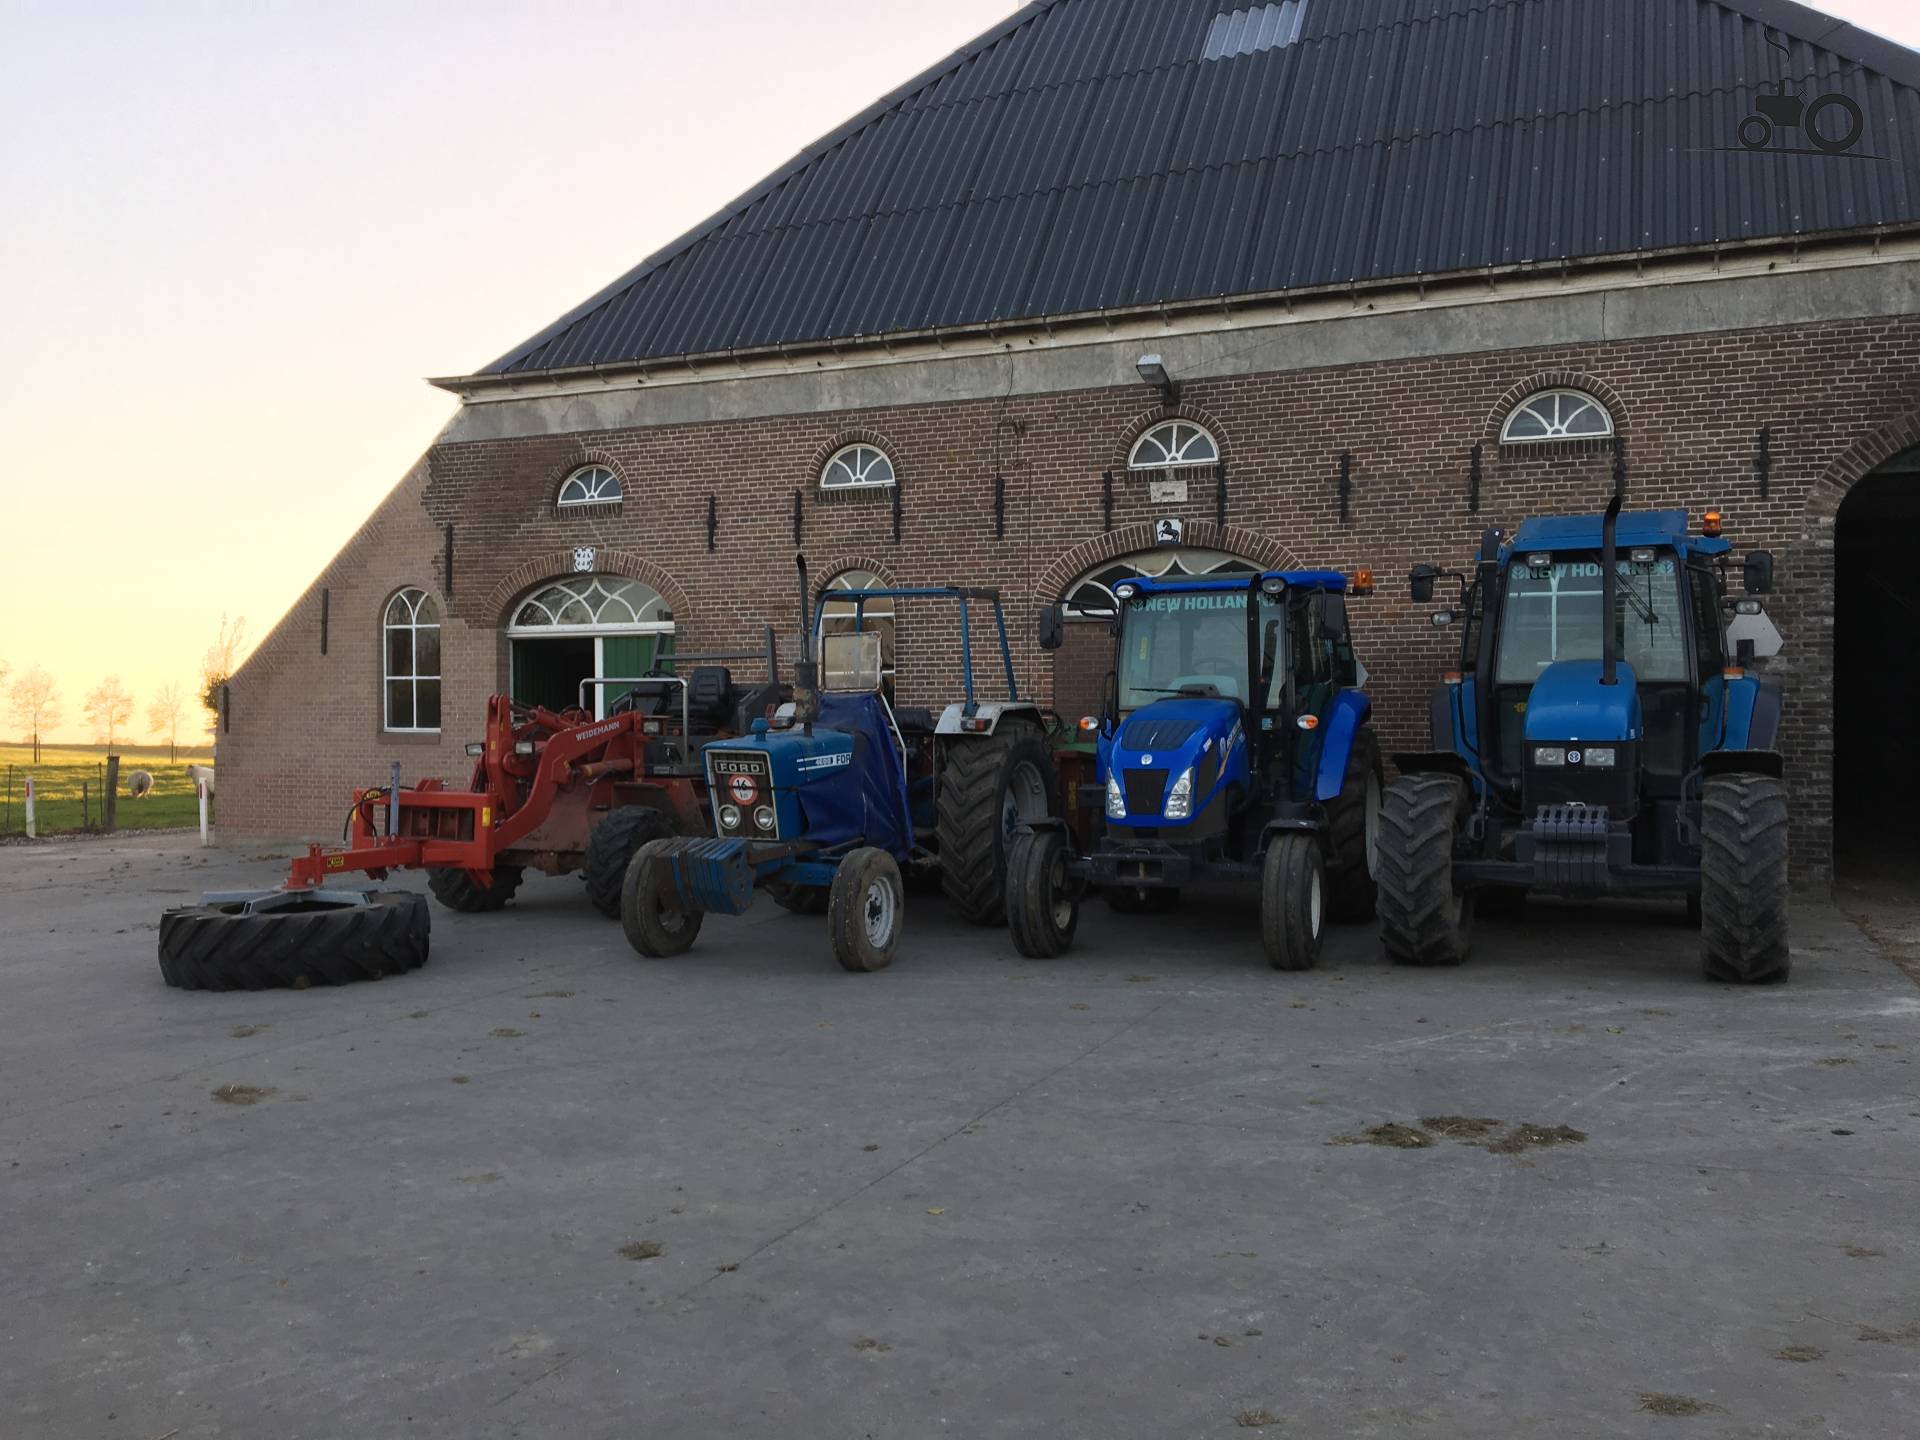 Van links naar rechts: Weidemann 4002 dp, Ford 4600, New Holland TD 5.65 en New Holland TS 90